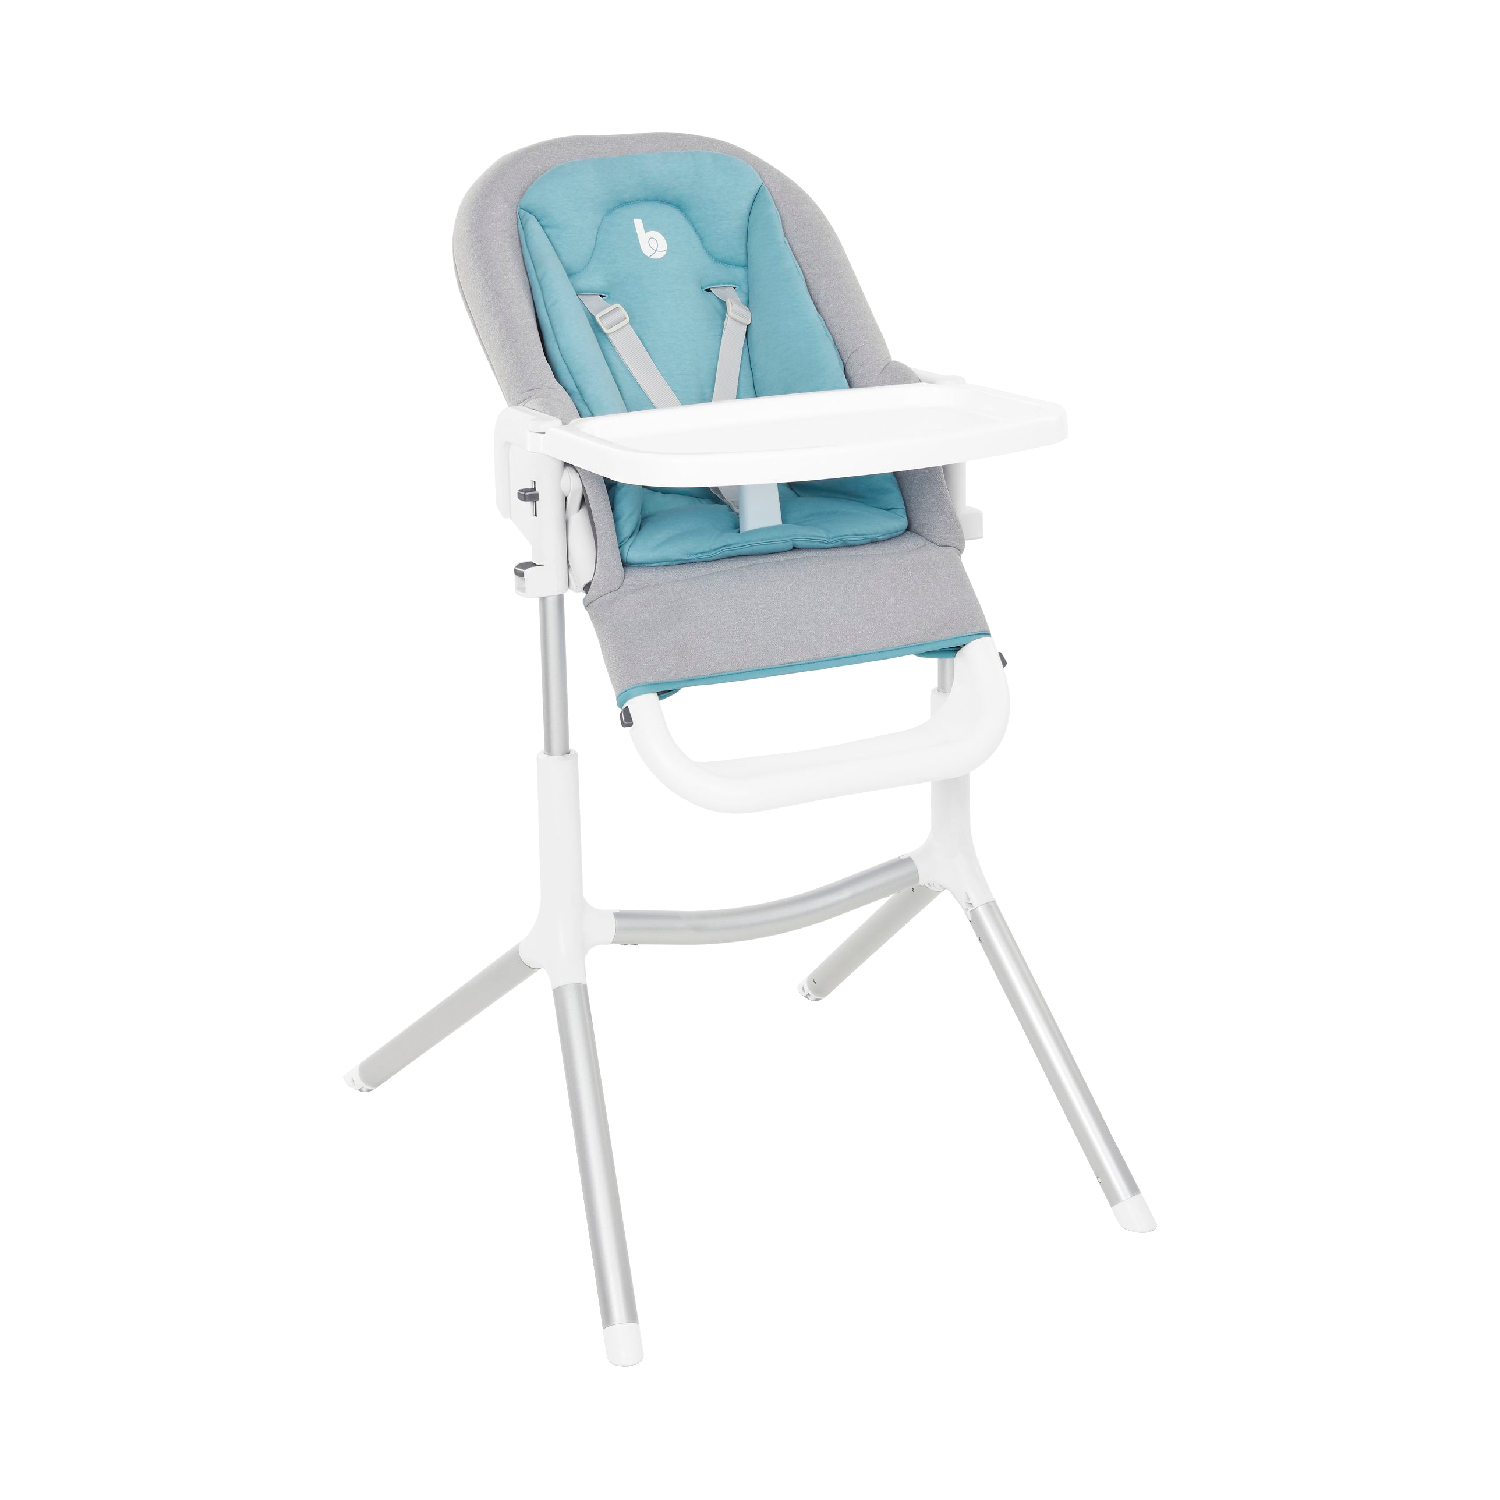 Babymoov Slick Kinderstoel grijs, blauw / wit